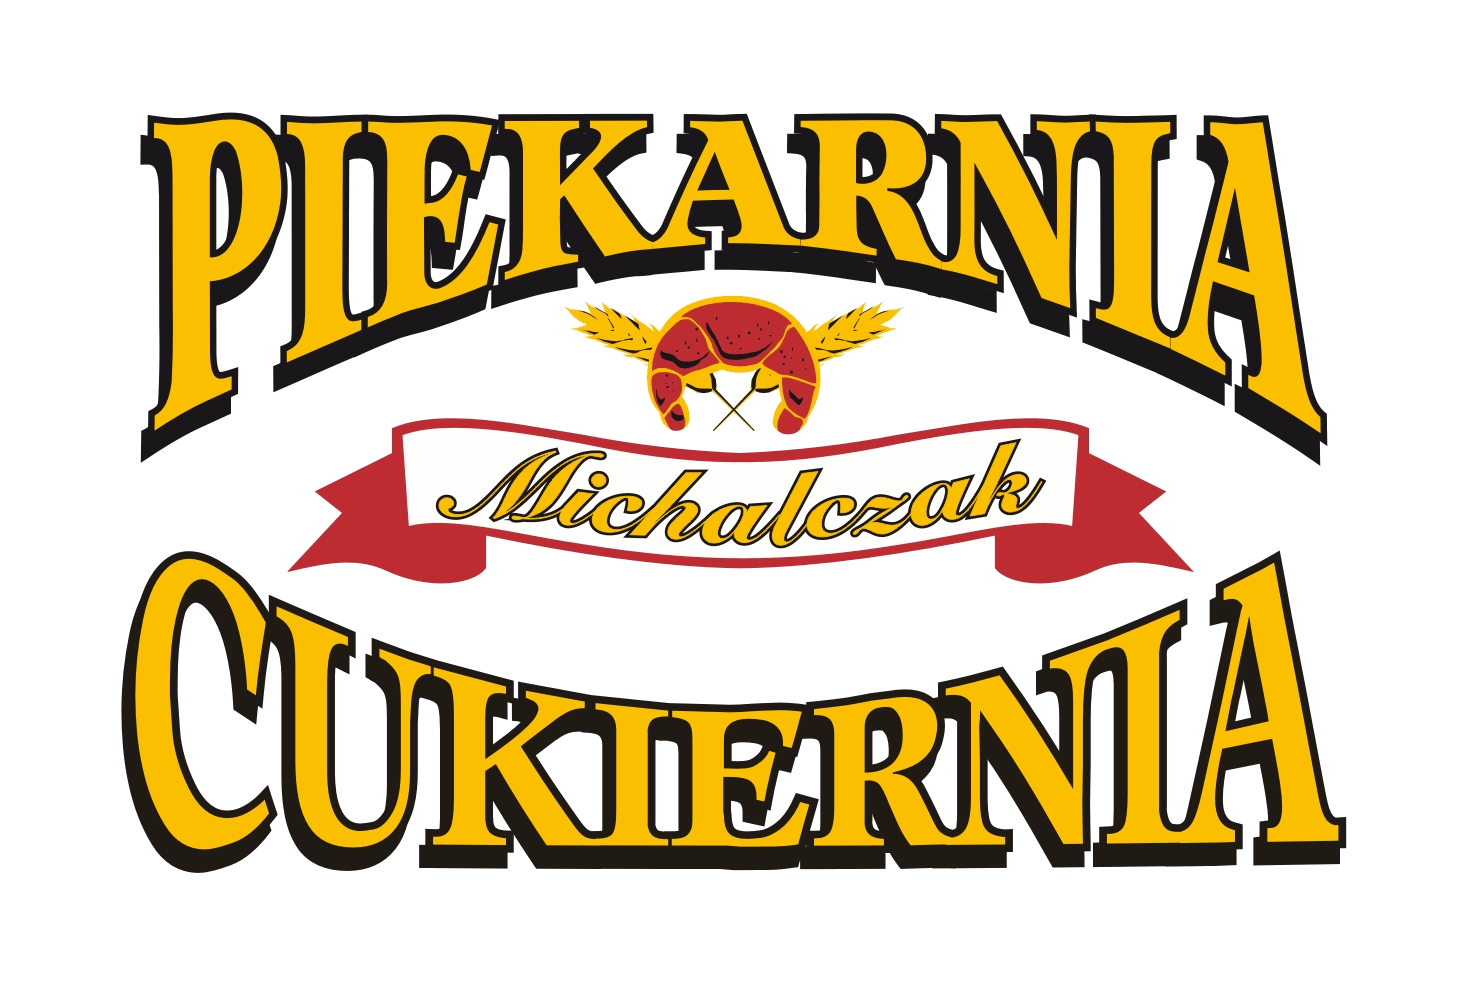 Piekarnia Cukiernia Michalczak